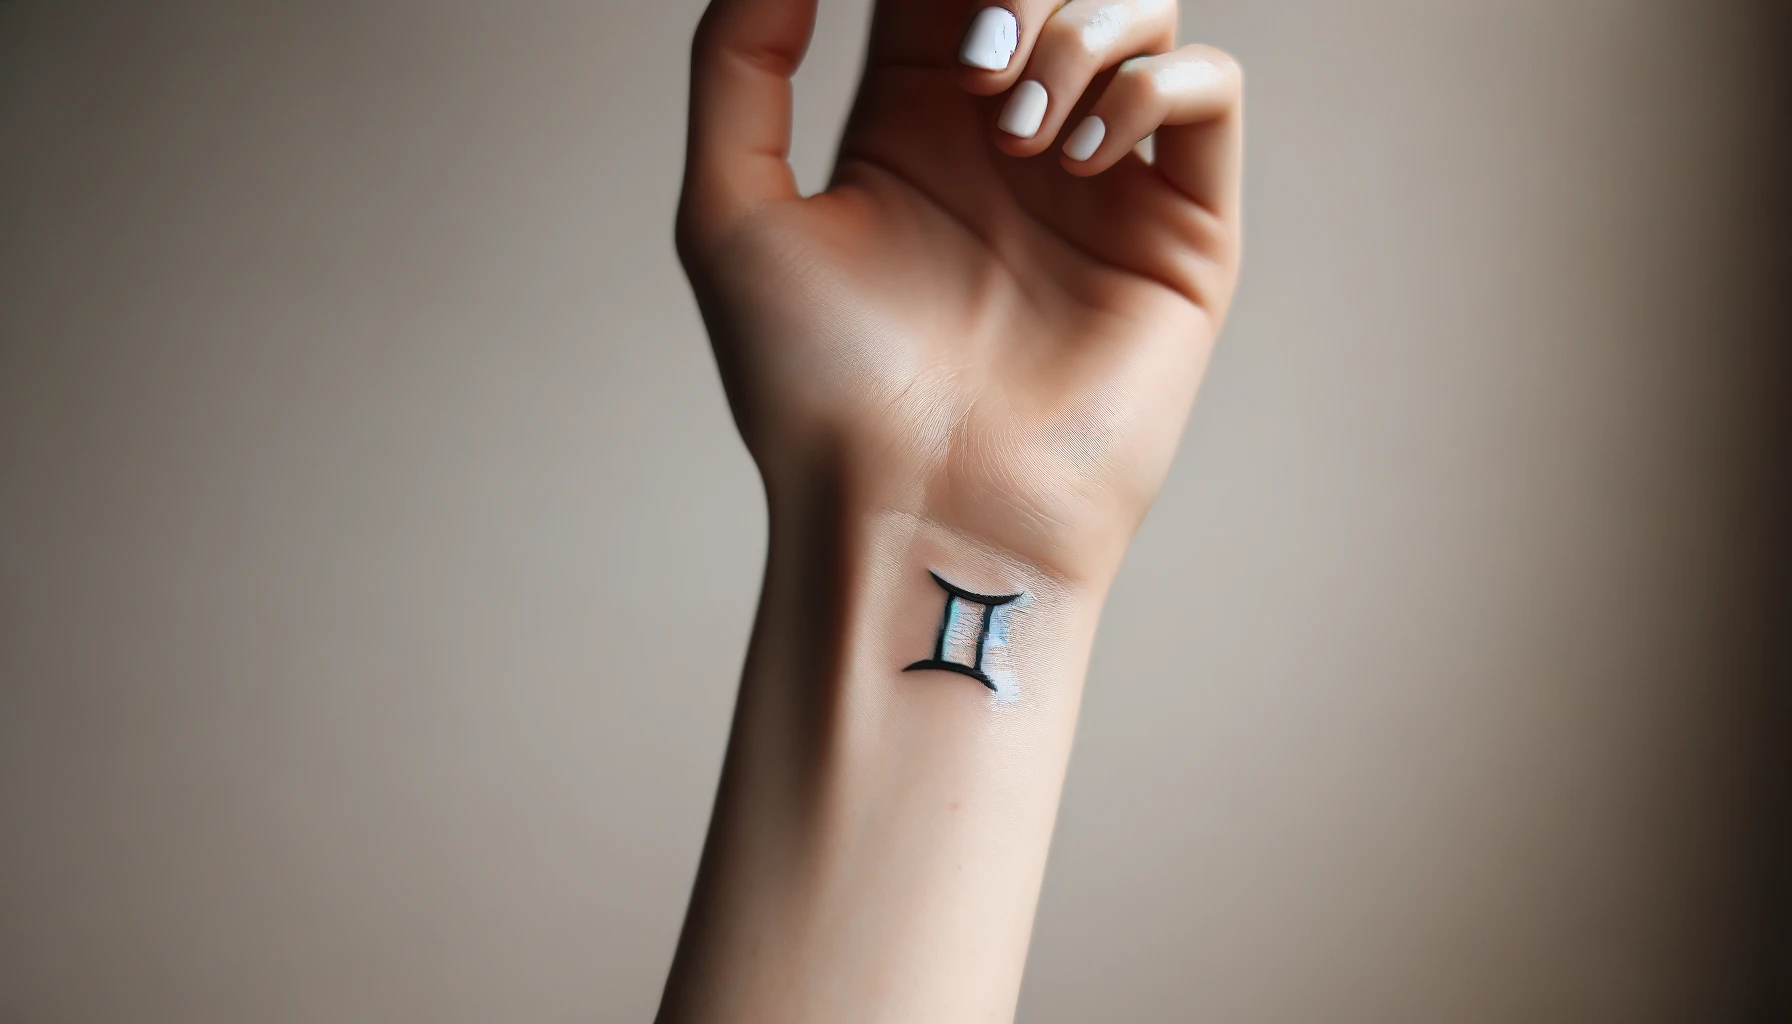 Ramię z subtelnym tatuażem w kształcie geminiowego symbolu zodiaku wyróżnia się na tle jednolitego tła. Czarne kontury symbolu są wypełnione bielą i delikatnymi cieniami, nadając głębi i trójwymiarowości. Skóra wokół tatuażu jest gładka i jednolicie jasna, co pozwala na wyraźne wyeksponowanie wzoru. Dłoń z dobrze wypielęgnowanymi, białymi paznokciami delikatnie się zaciska, co dodatkowo podkreśla elegancję i prostotę tatuażu